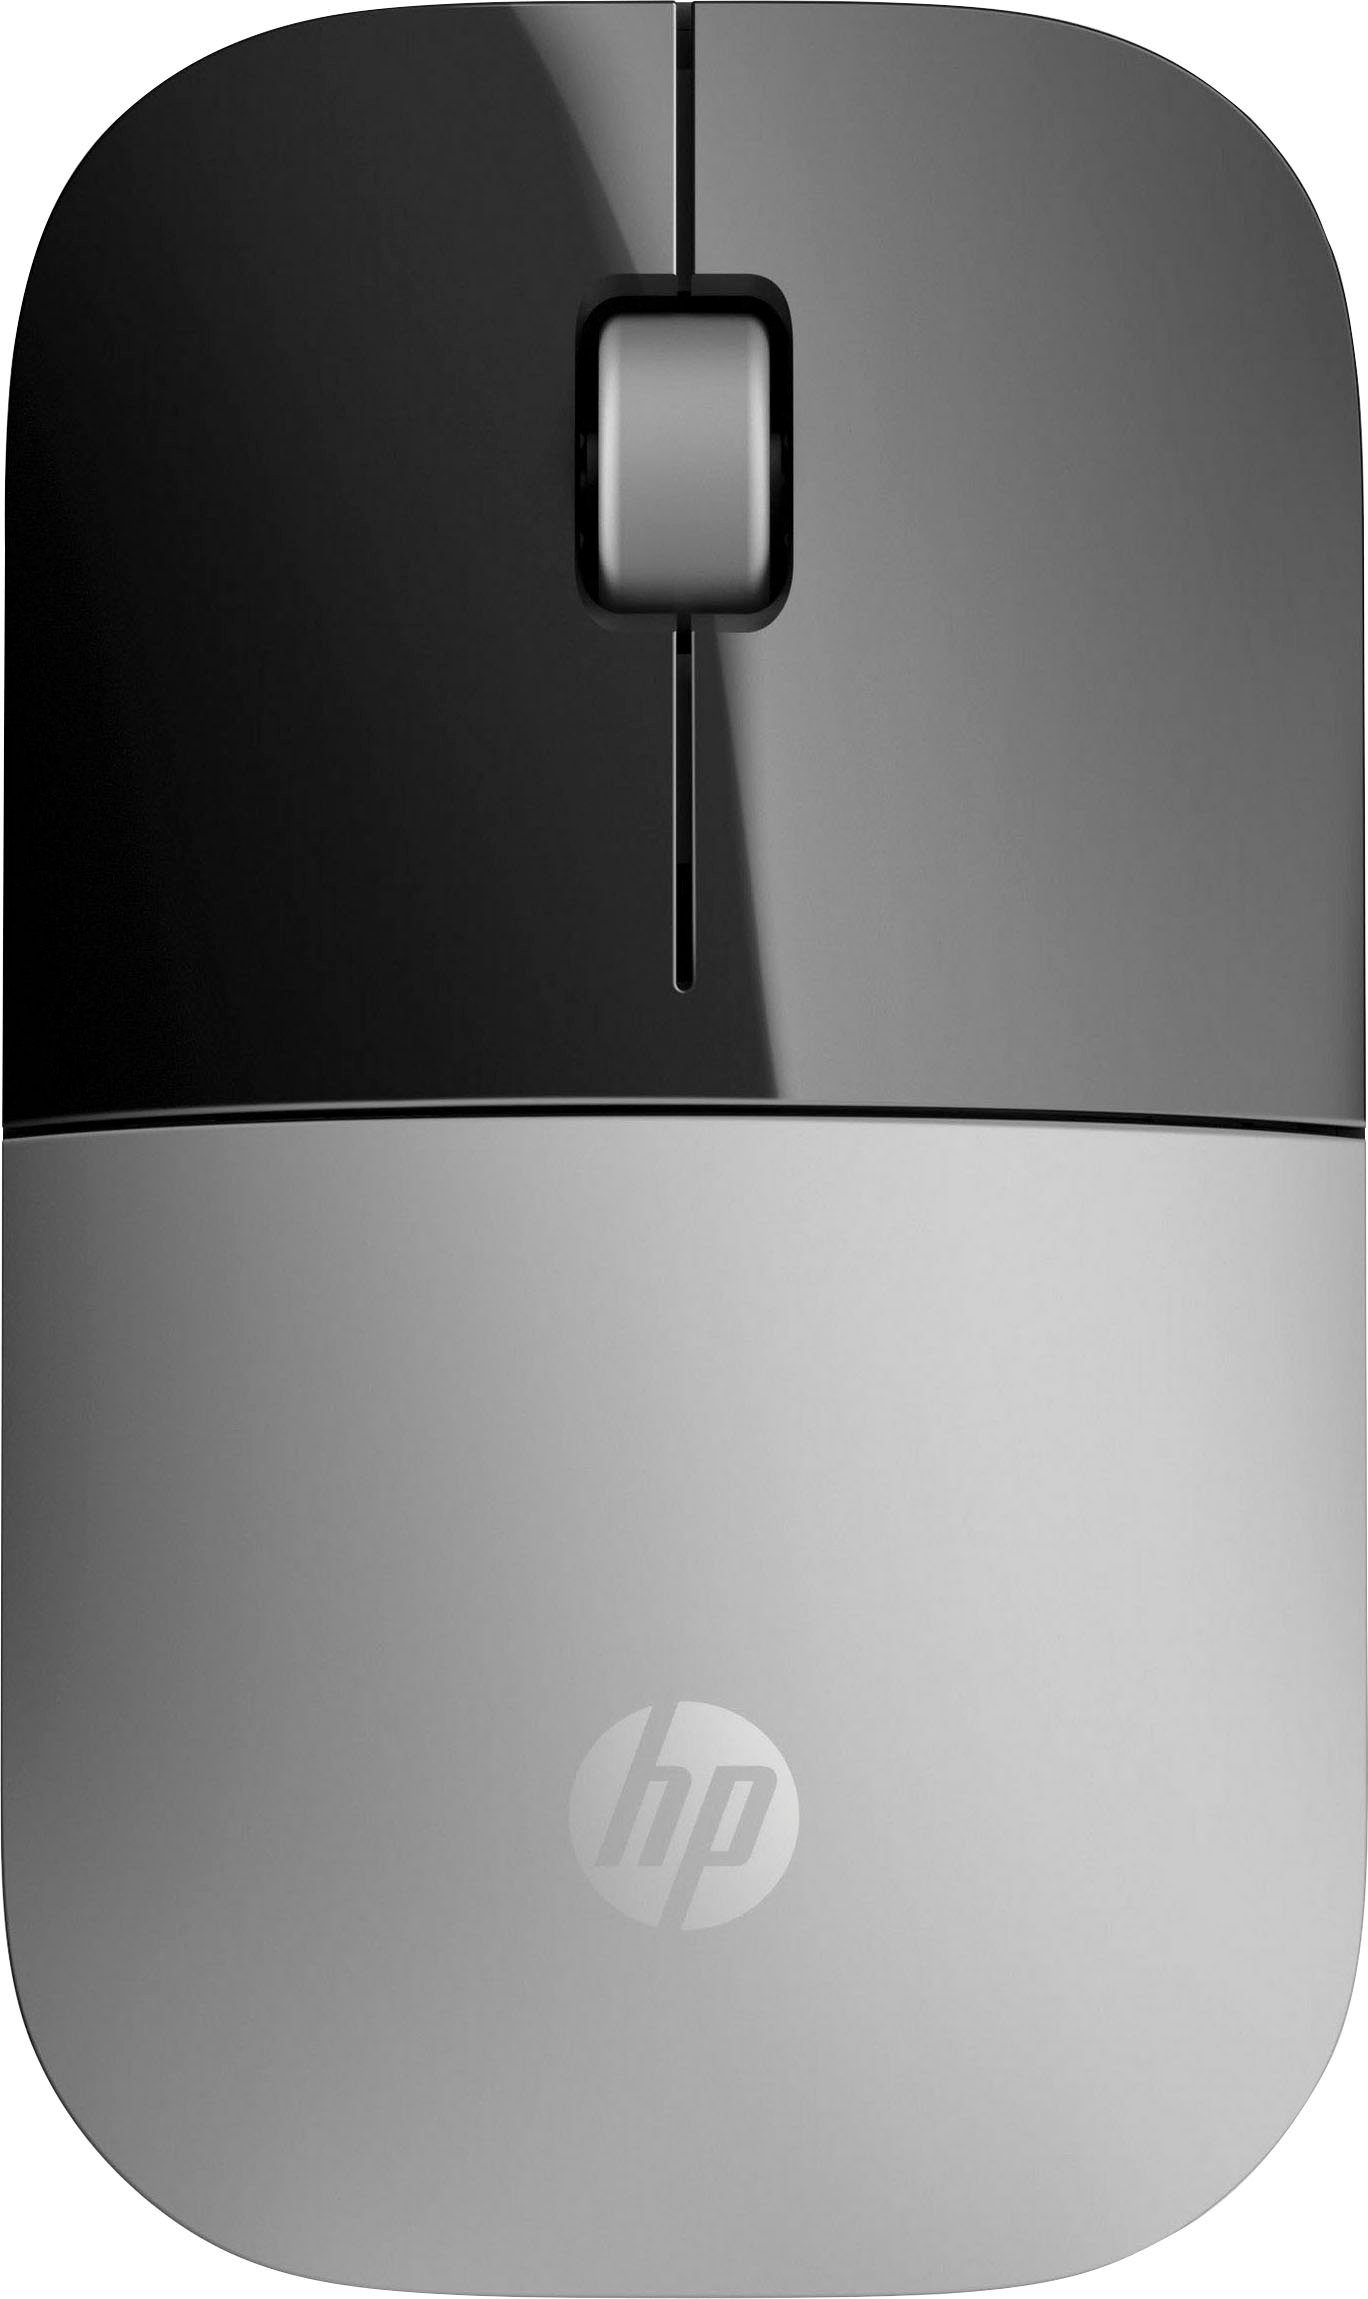 schwarz/silberfarben HP Z3700 Maus